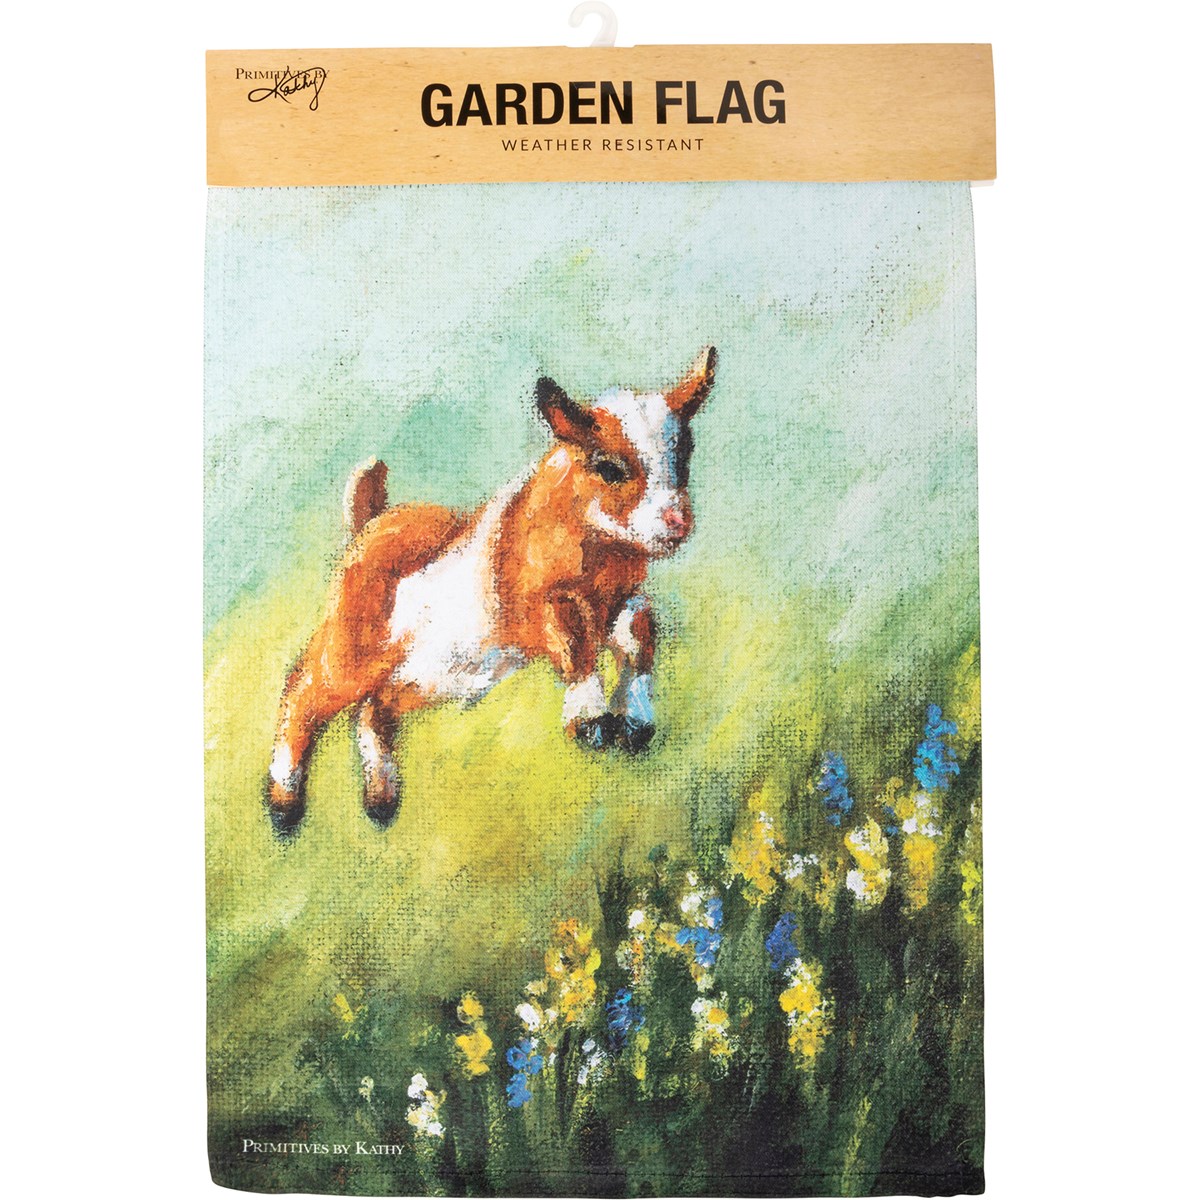 Jumping Goat Garden Flag - Polyester